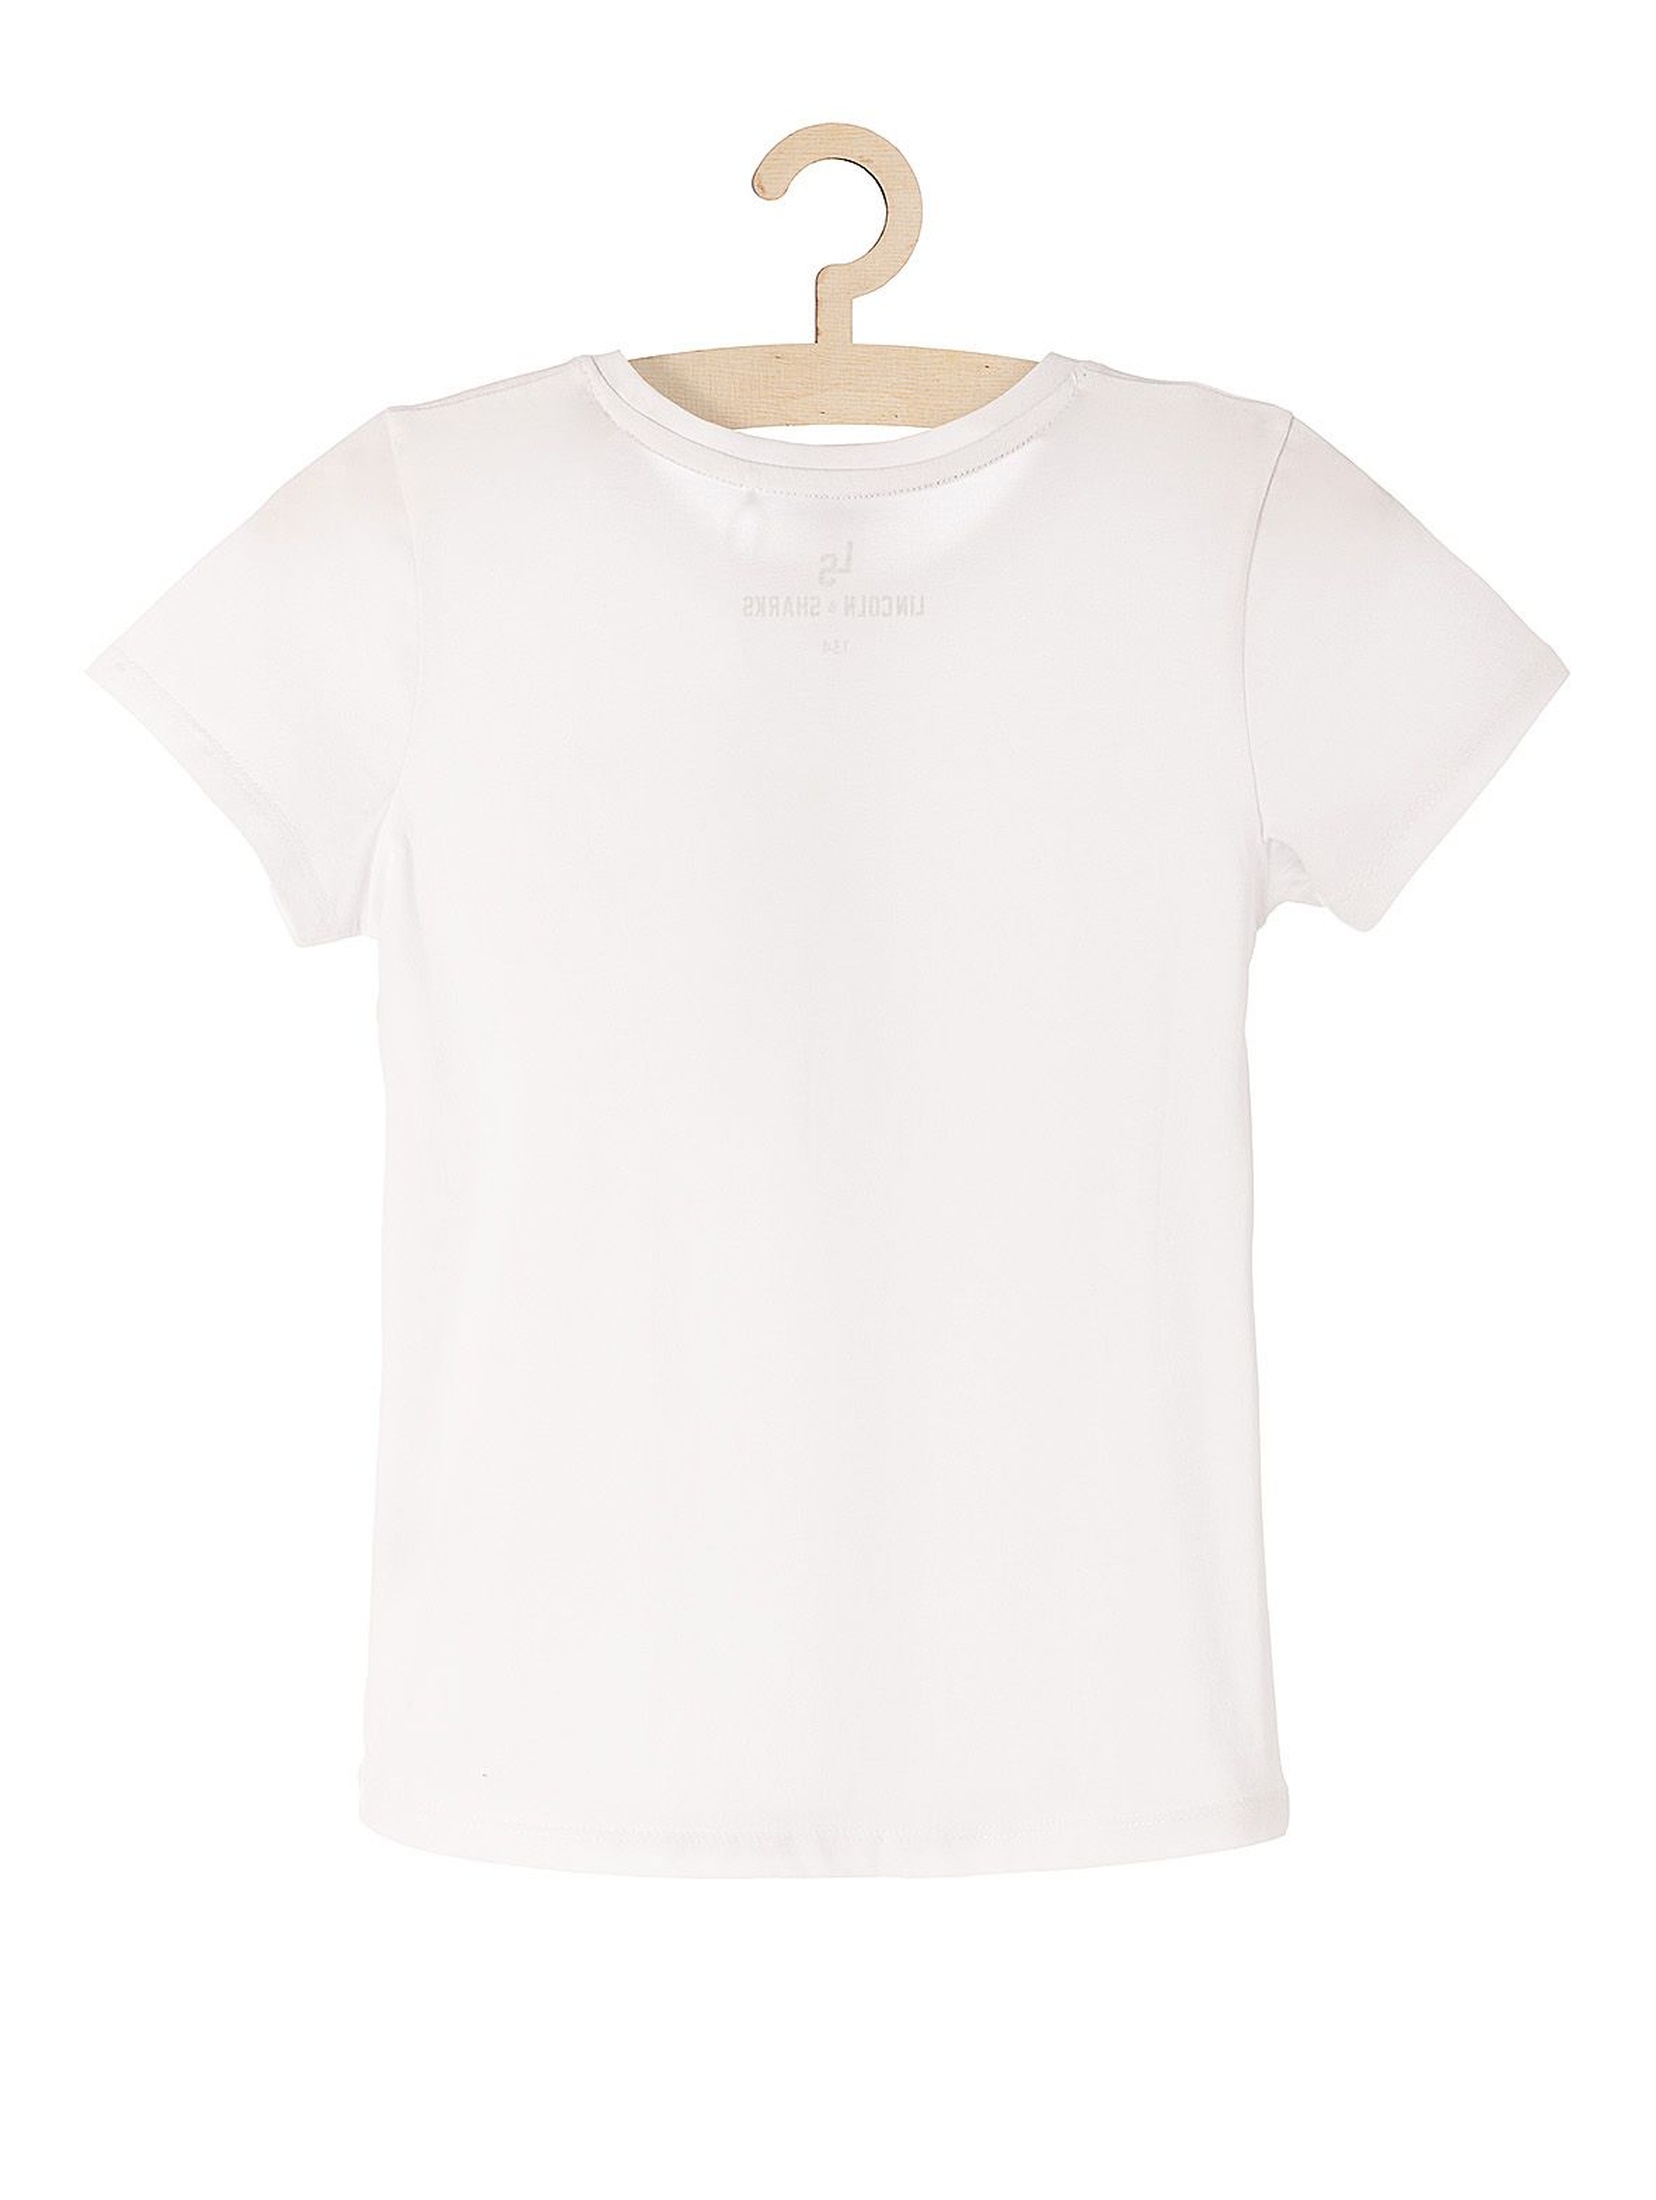 T-shirt biały bawełniany z serduszkiem